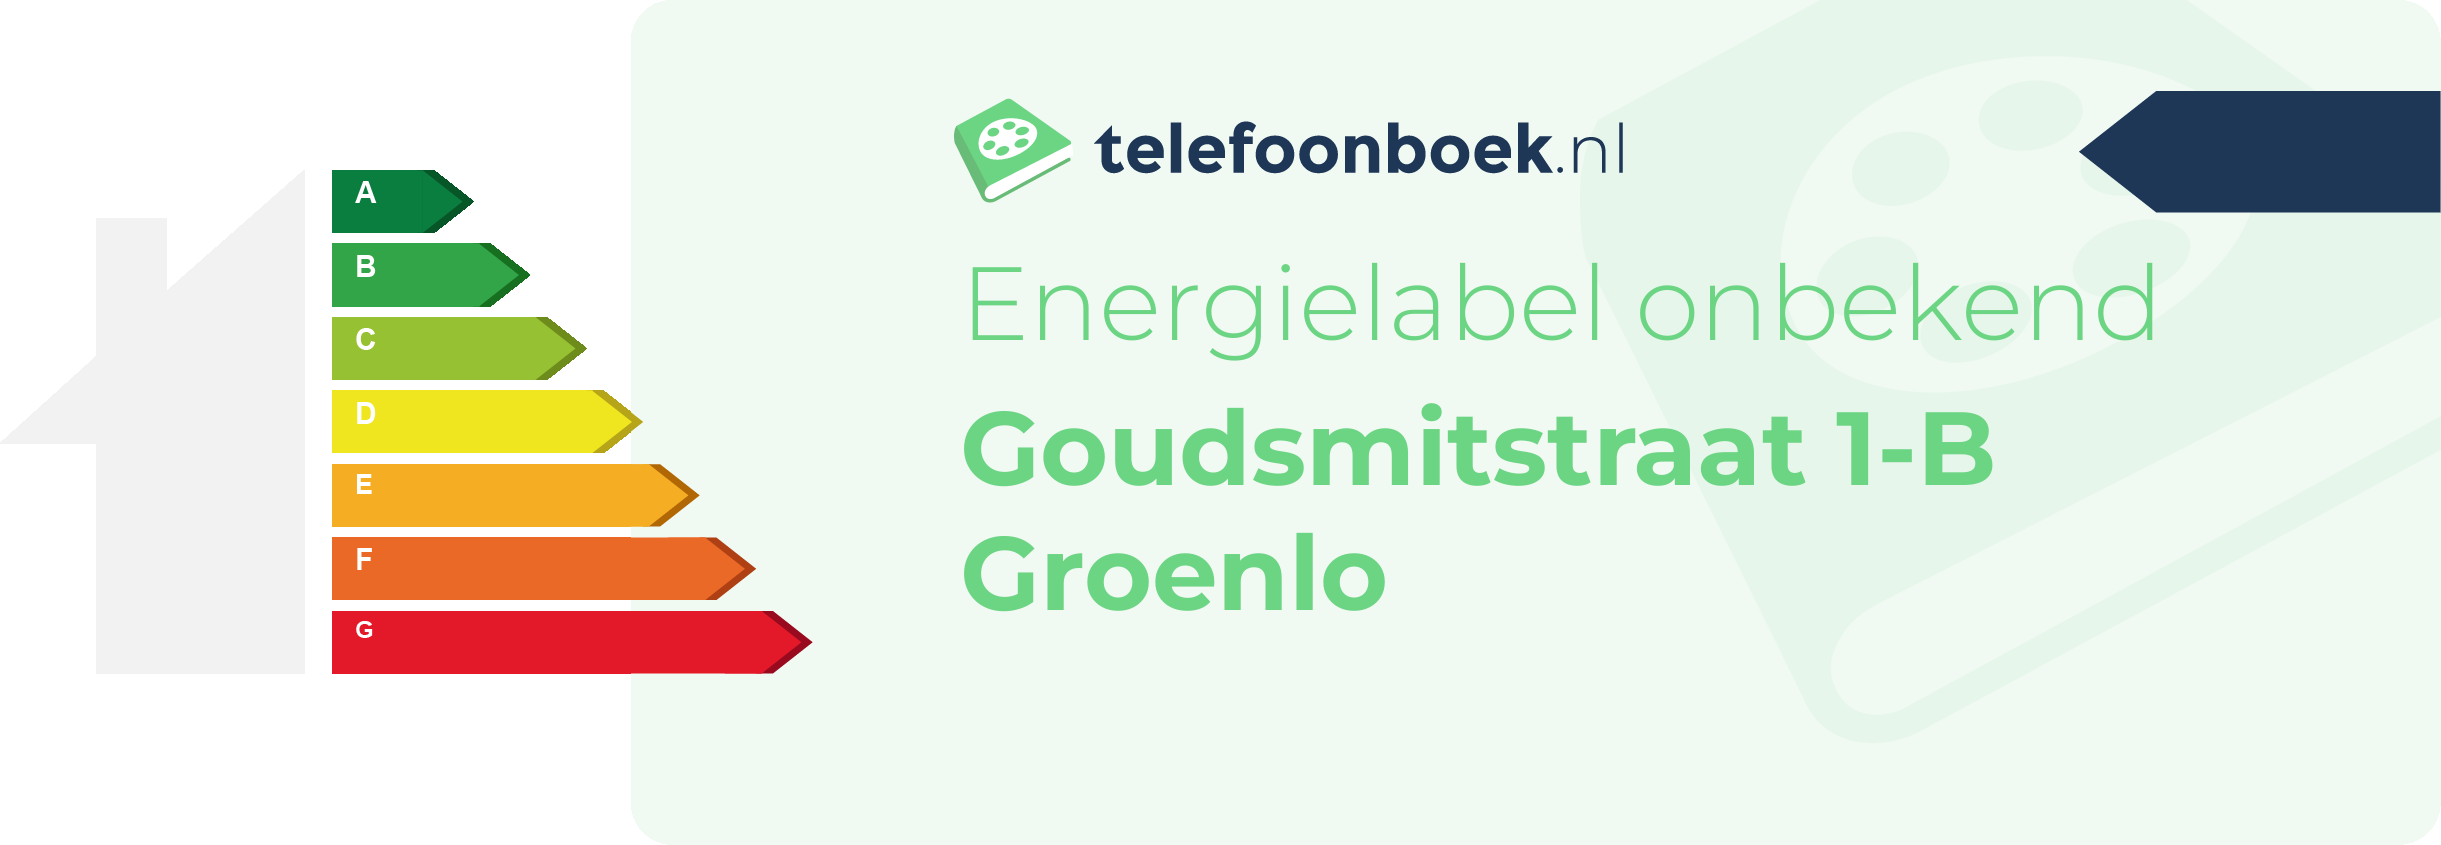 Energielabel Goudsmitstraat 1-B Groenlo